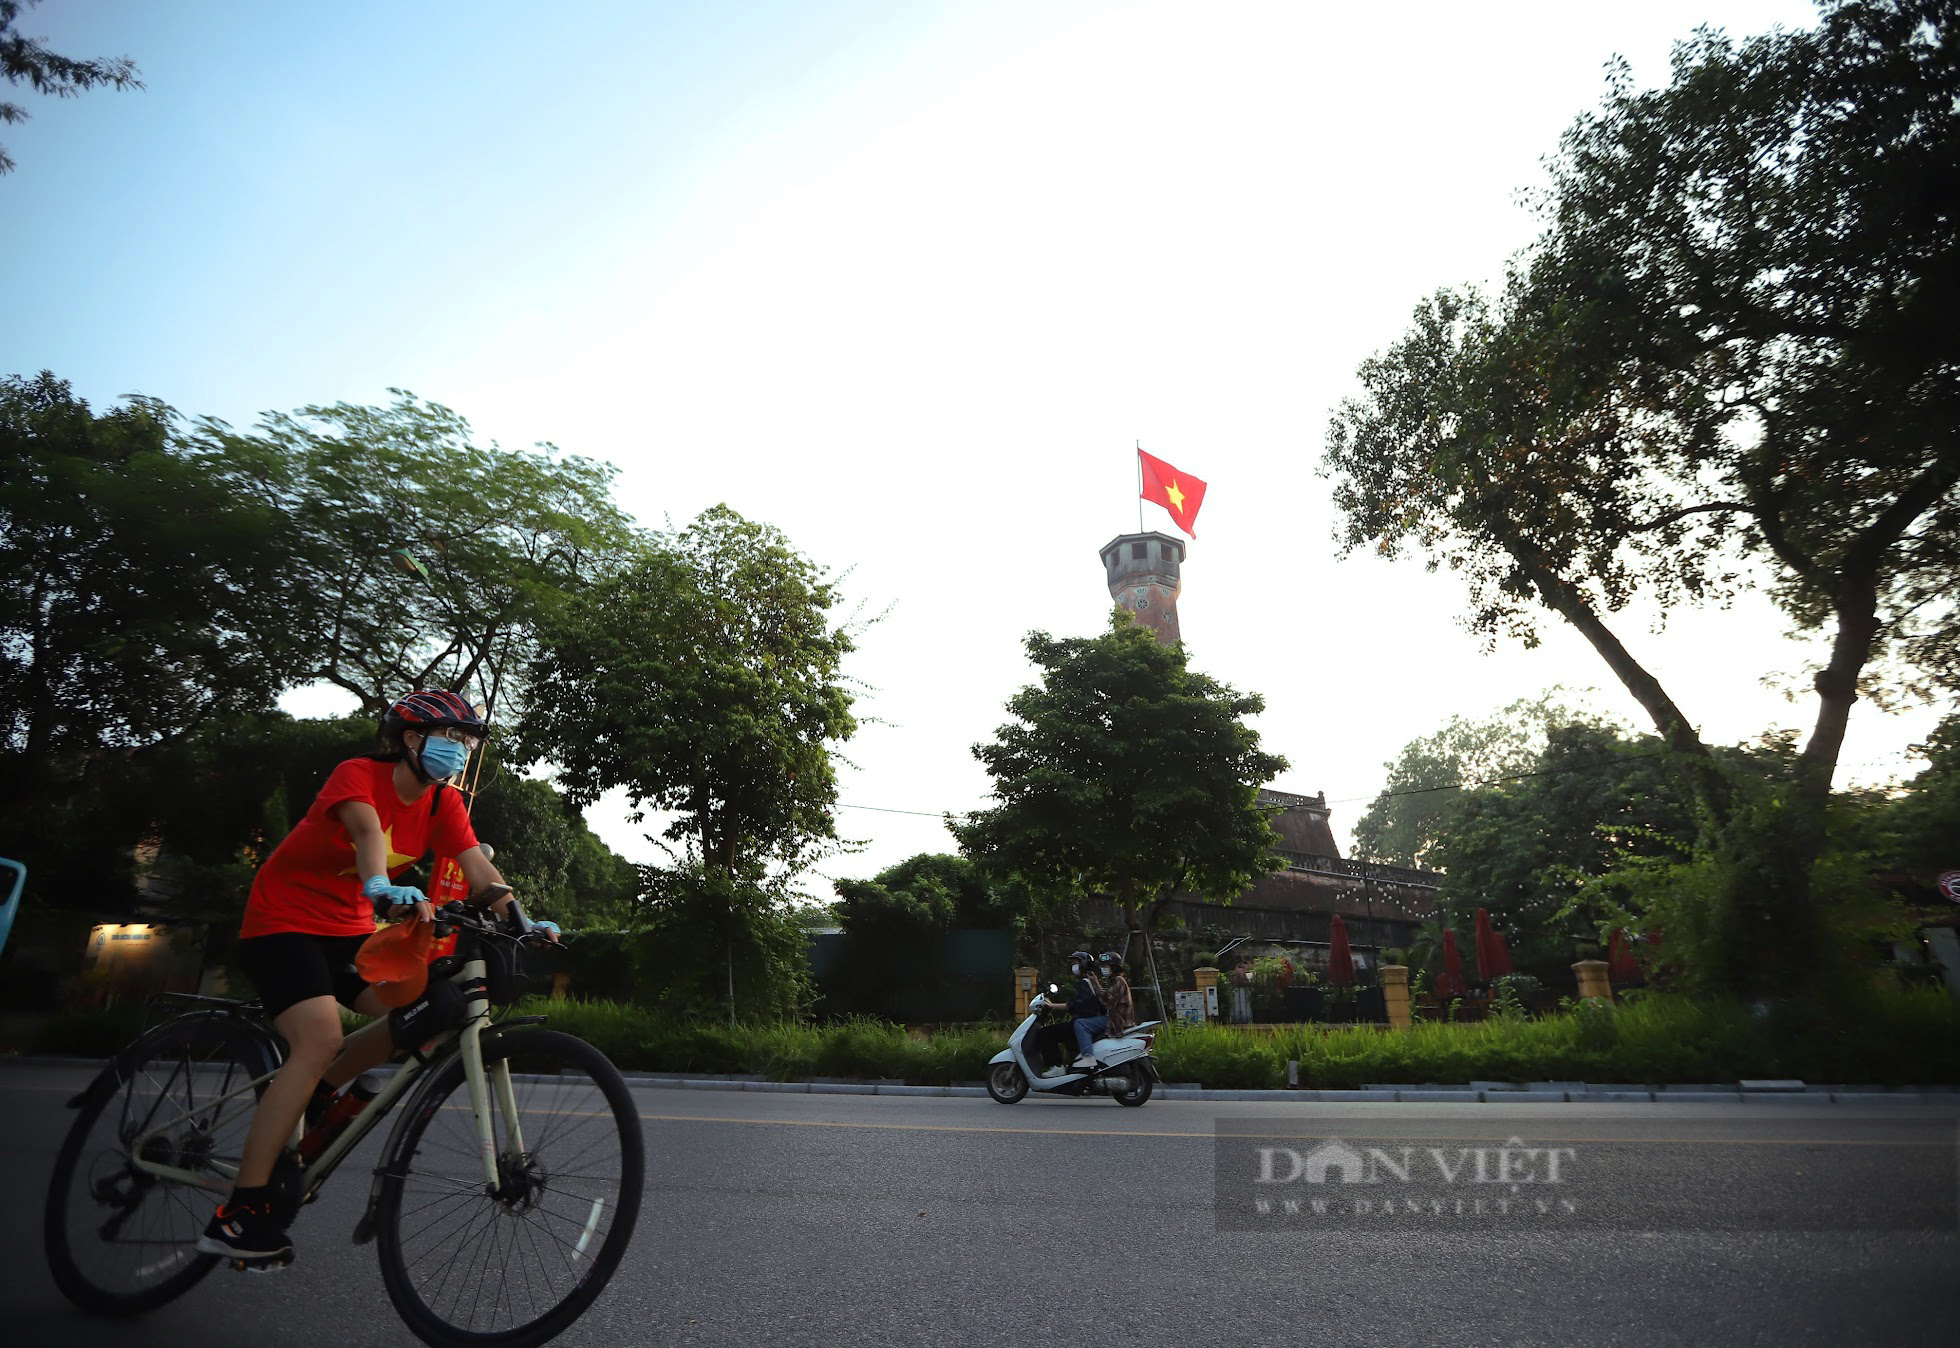 Hình ảnh bình dị trên đường phố Hà Nội trong ngày Quốc khánh 2/9 - Ảnh 1.